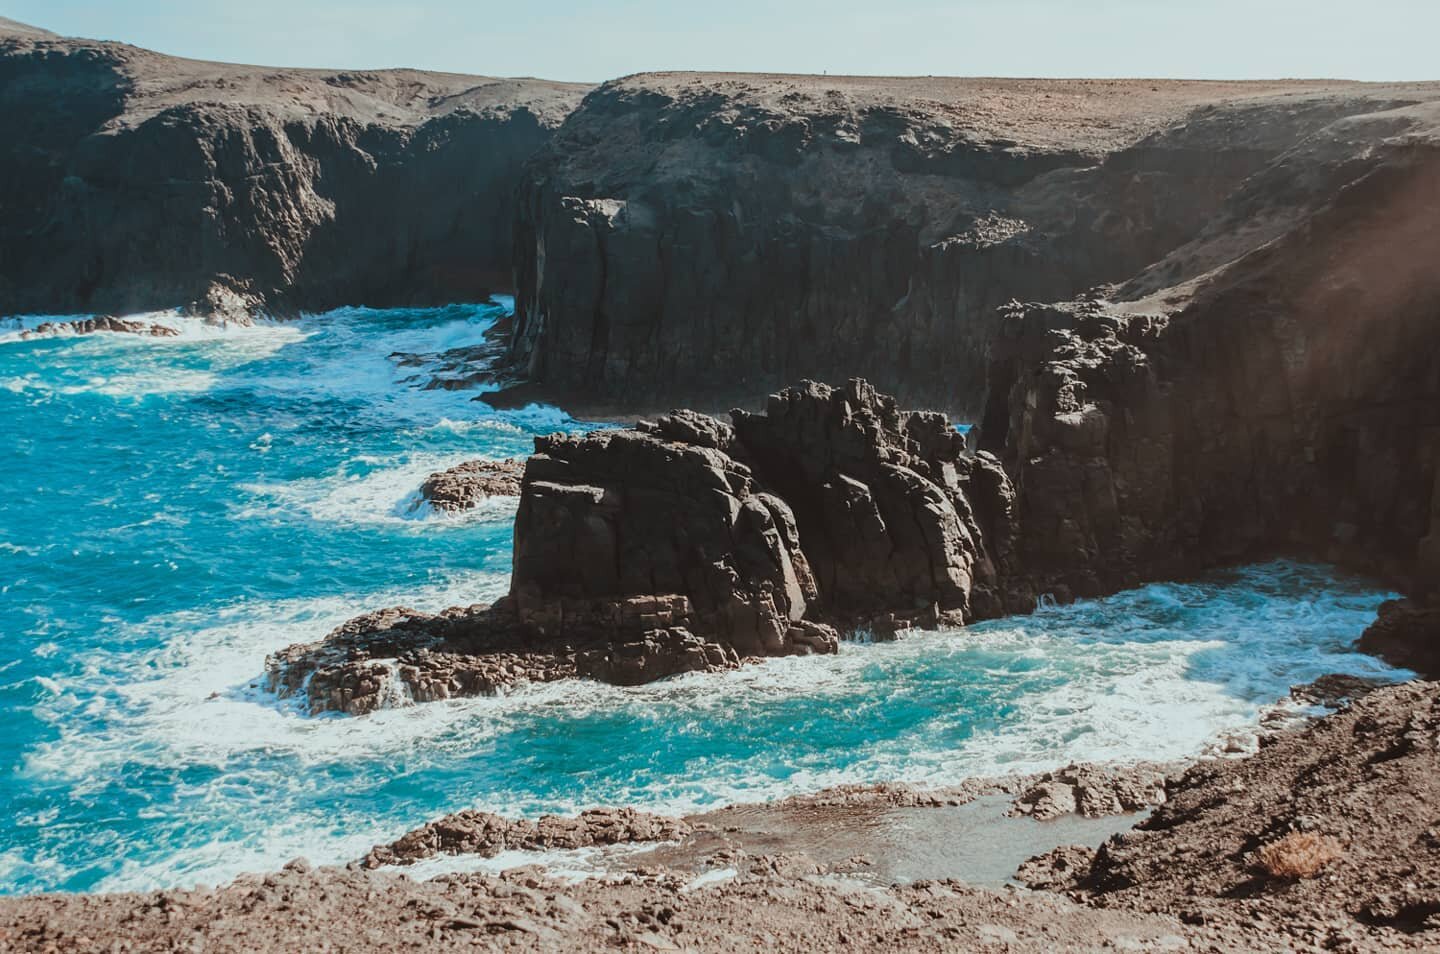 Love adventures? Fuerteventura has many wild parts. You never stop to explore and discover new places on this island.
Quieras aventuras?  Fuerteventura tiene muchas partes salvajes.  Nunca te paras a explorar y descubrir nuevos lugares en esta isla.
